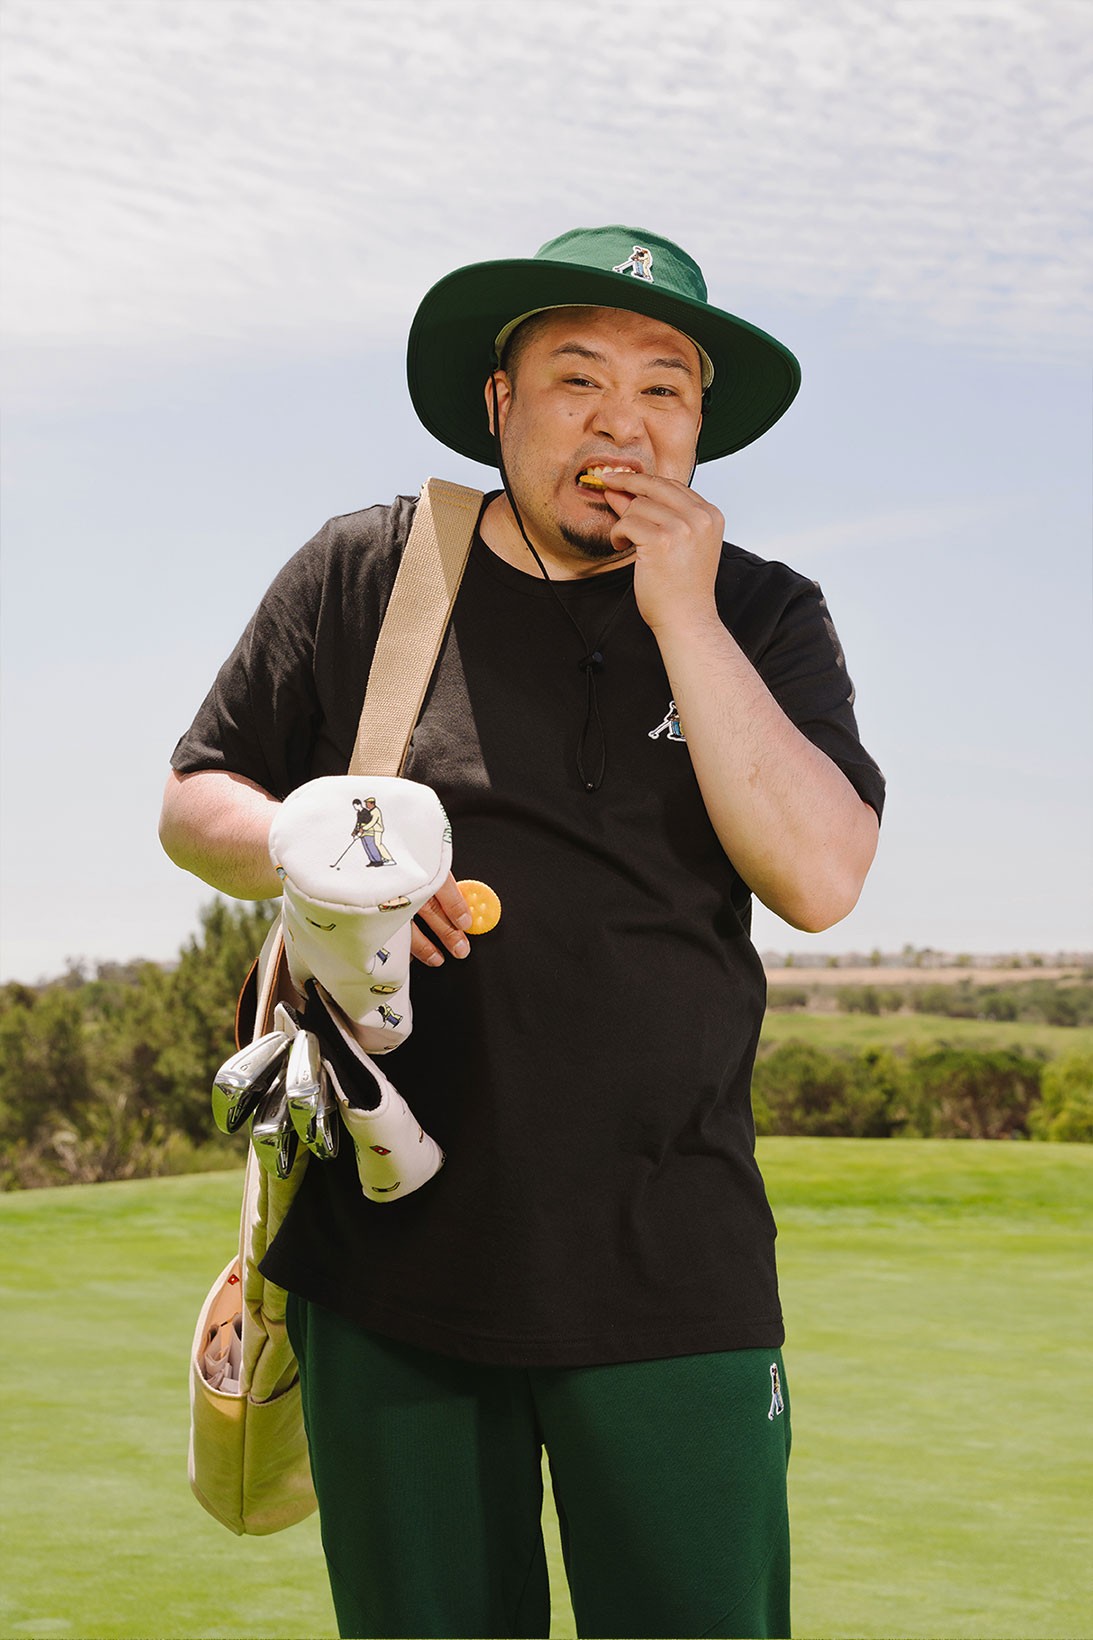 adidas выпустил гольф-коллекцию в стиле комедии «Счастливчик Гилмор» (фото 8)